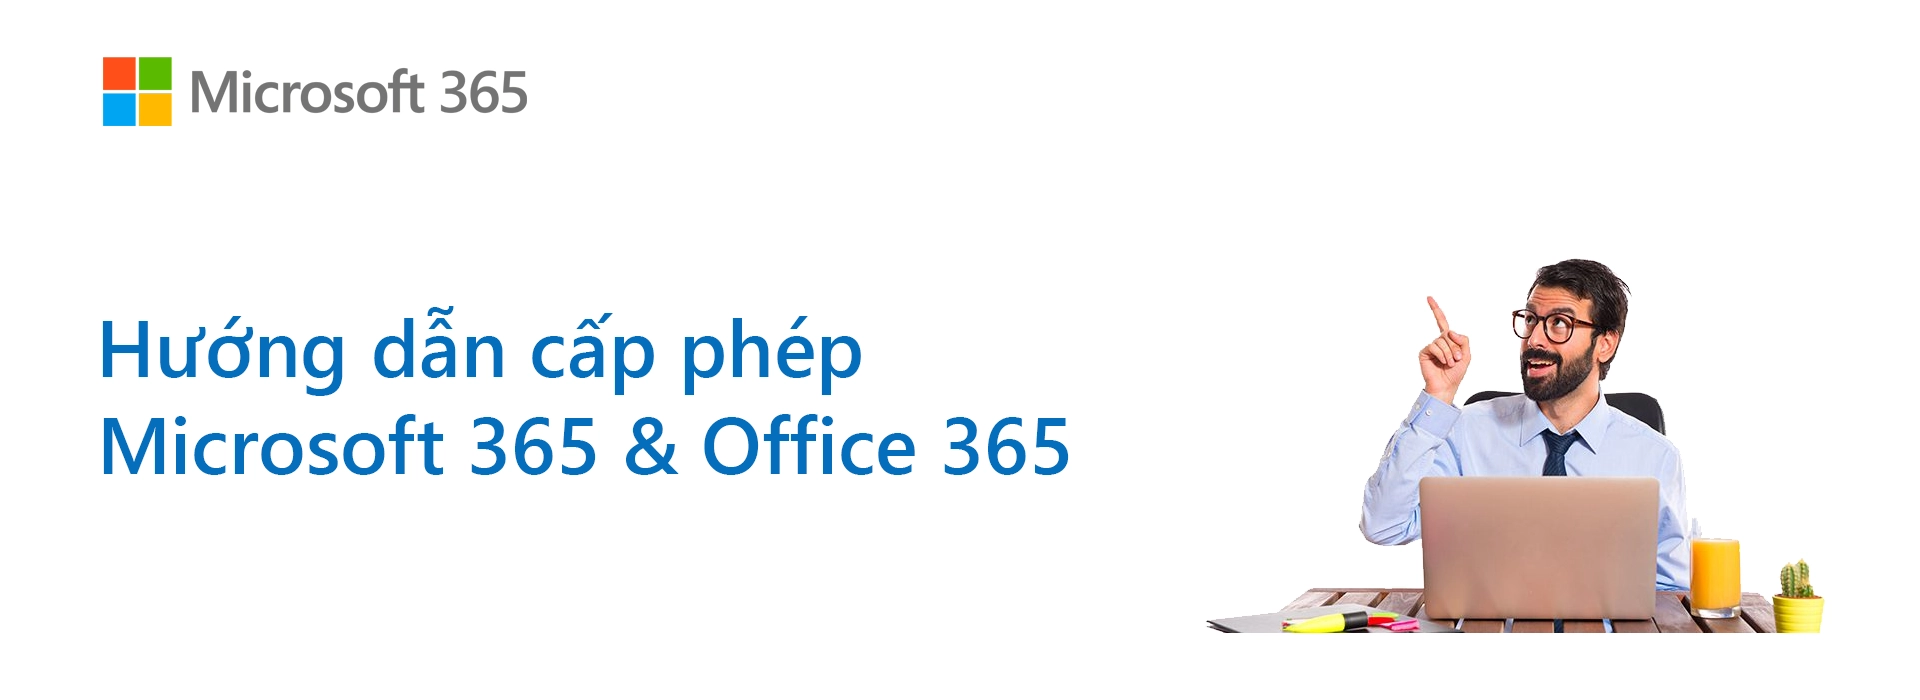 Hướng dẫn chi tiết về các loại cấp phép Microsoft 365 & Office 365